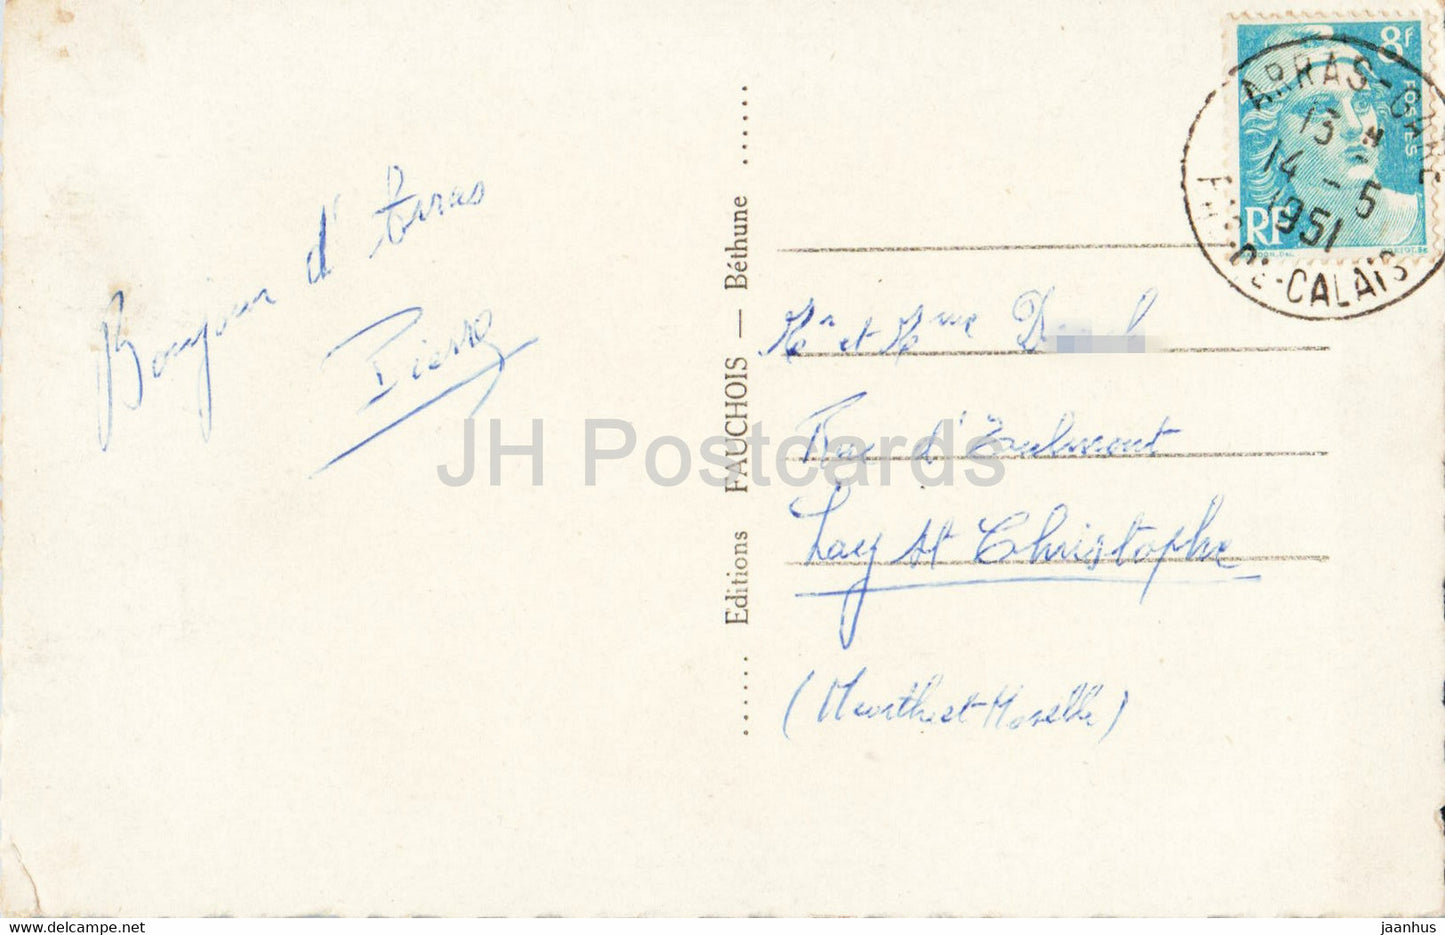 L'Ami Bidasse vous envoie son coeur d'Arras - chef lieu du Pas de Calais - alte Postkarte - 1951 - Frankreich - gebraucht